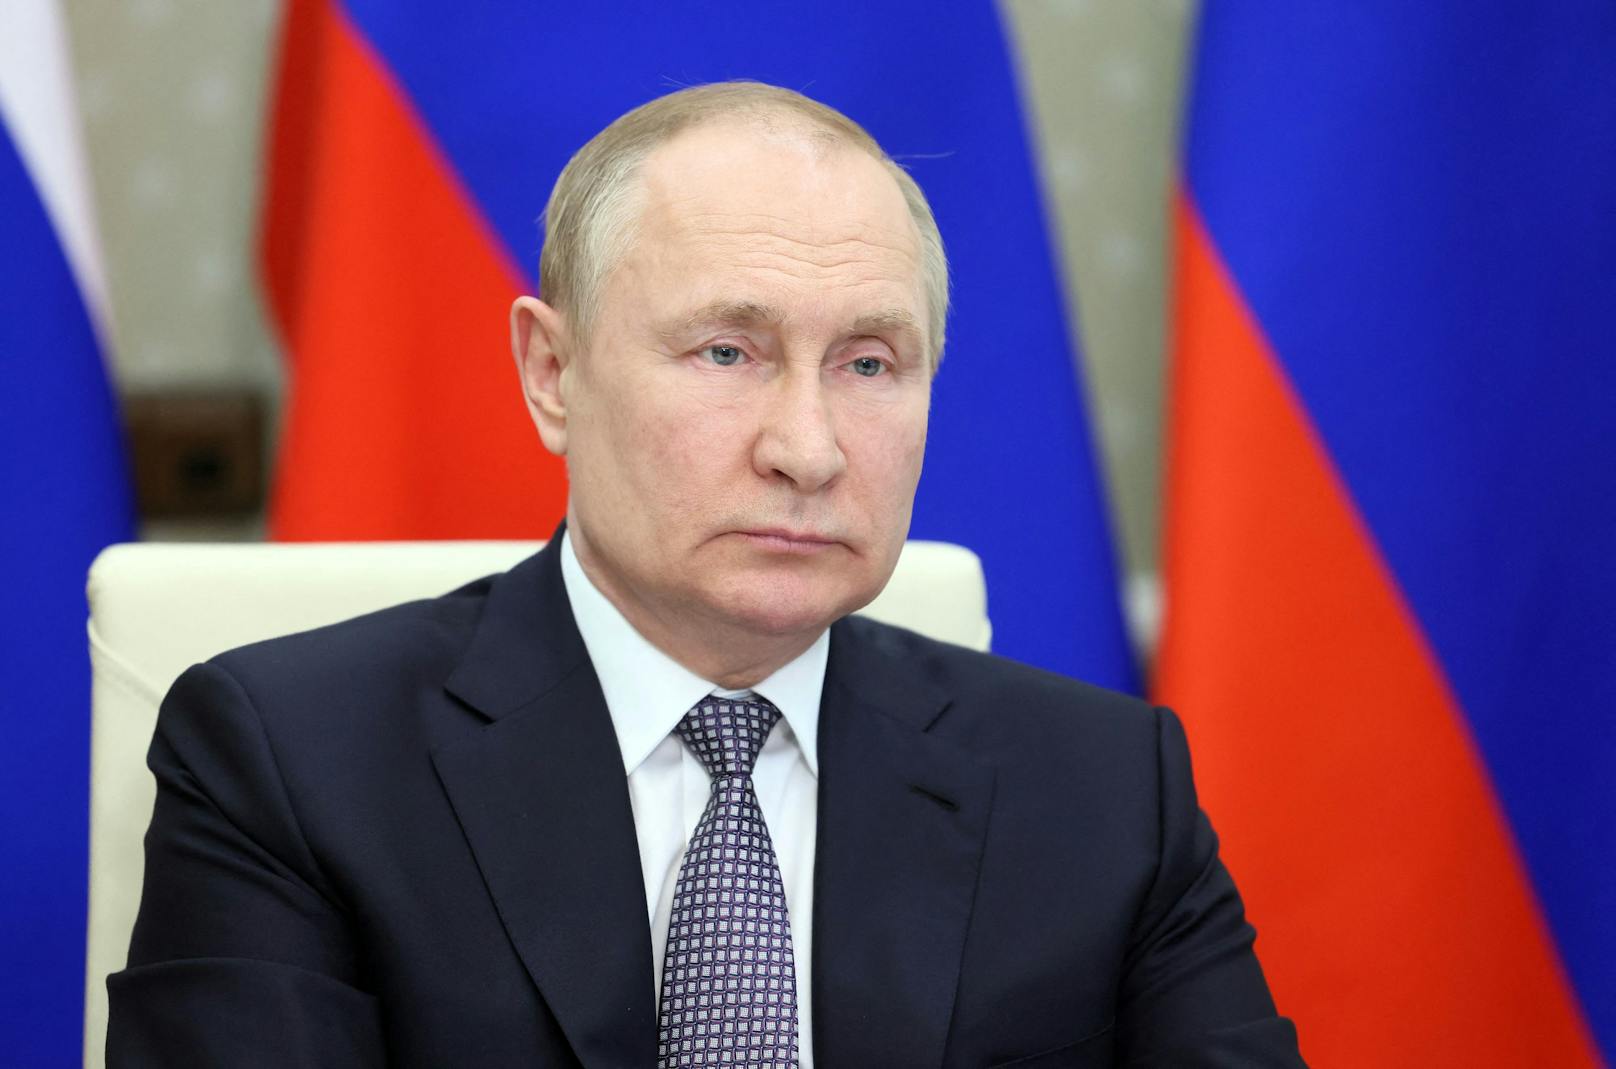 Wladimir Putin als "Napoleon", der den Ukraine-Krieg zu verlieren drohe – Ex-Separatistenführer Igor Girkin übt Kritik.